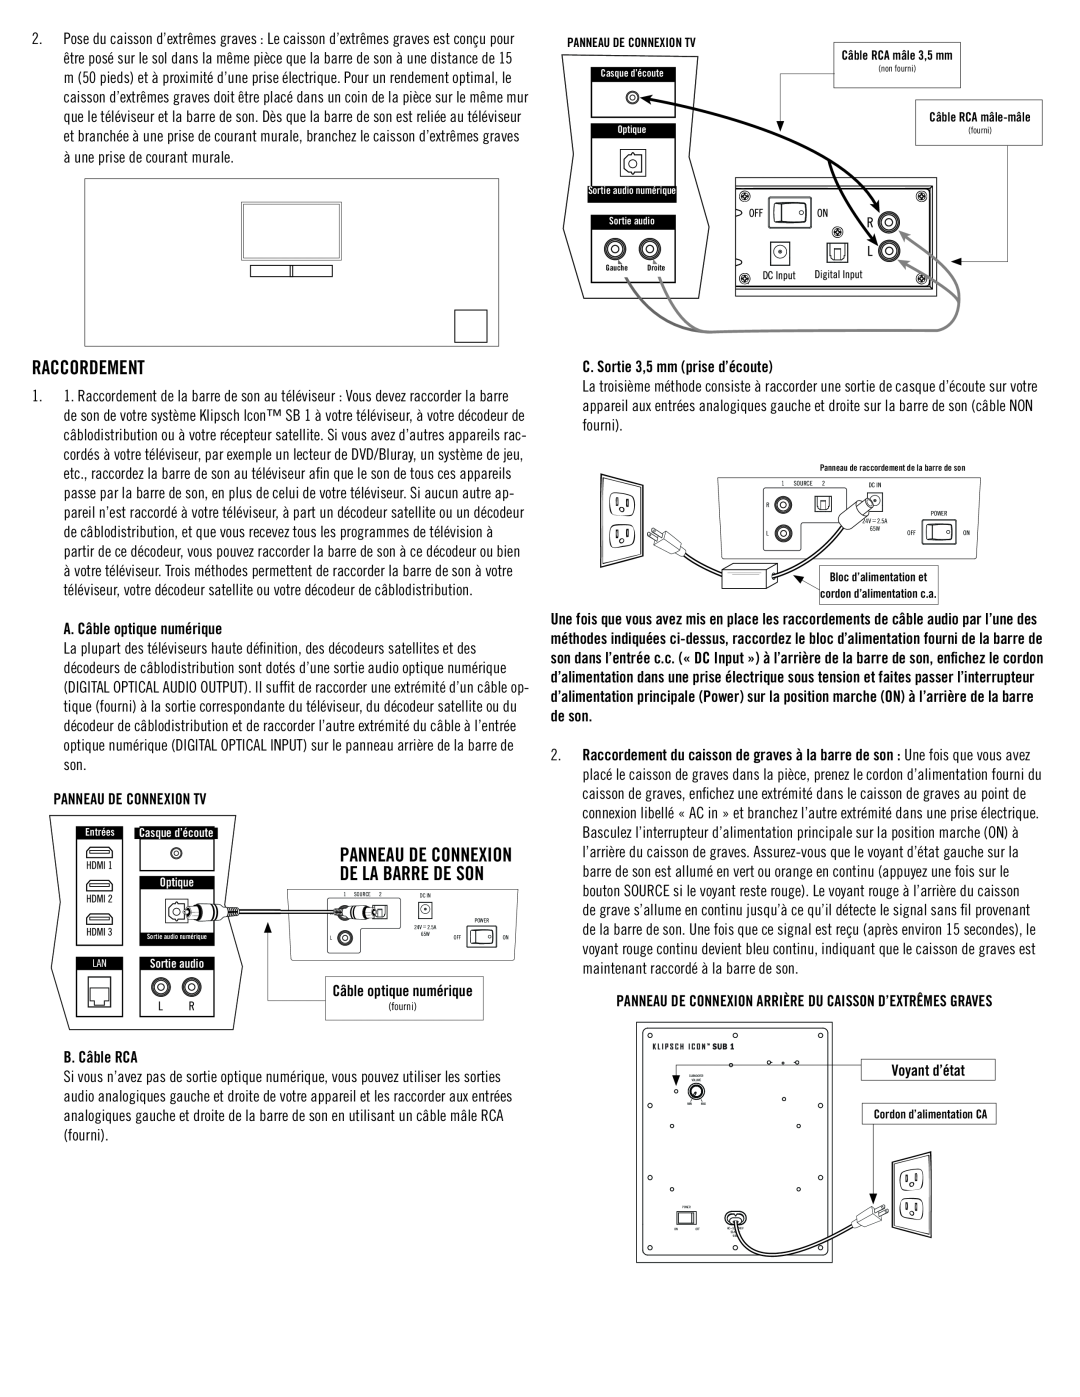 Klipsch SB 1 Raccordement, A. Câble optique numérique, Panneau de connexion TV, C. Sortie 3,5 mm prise d’écoute 